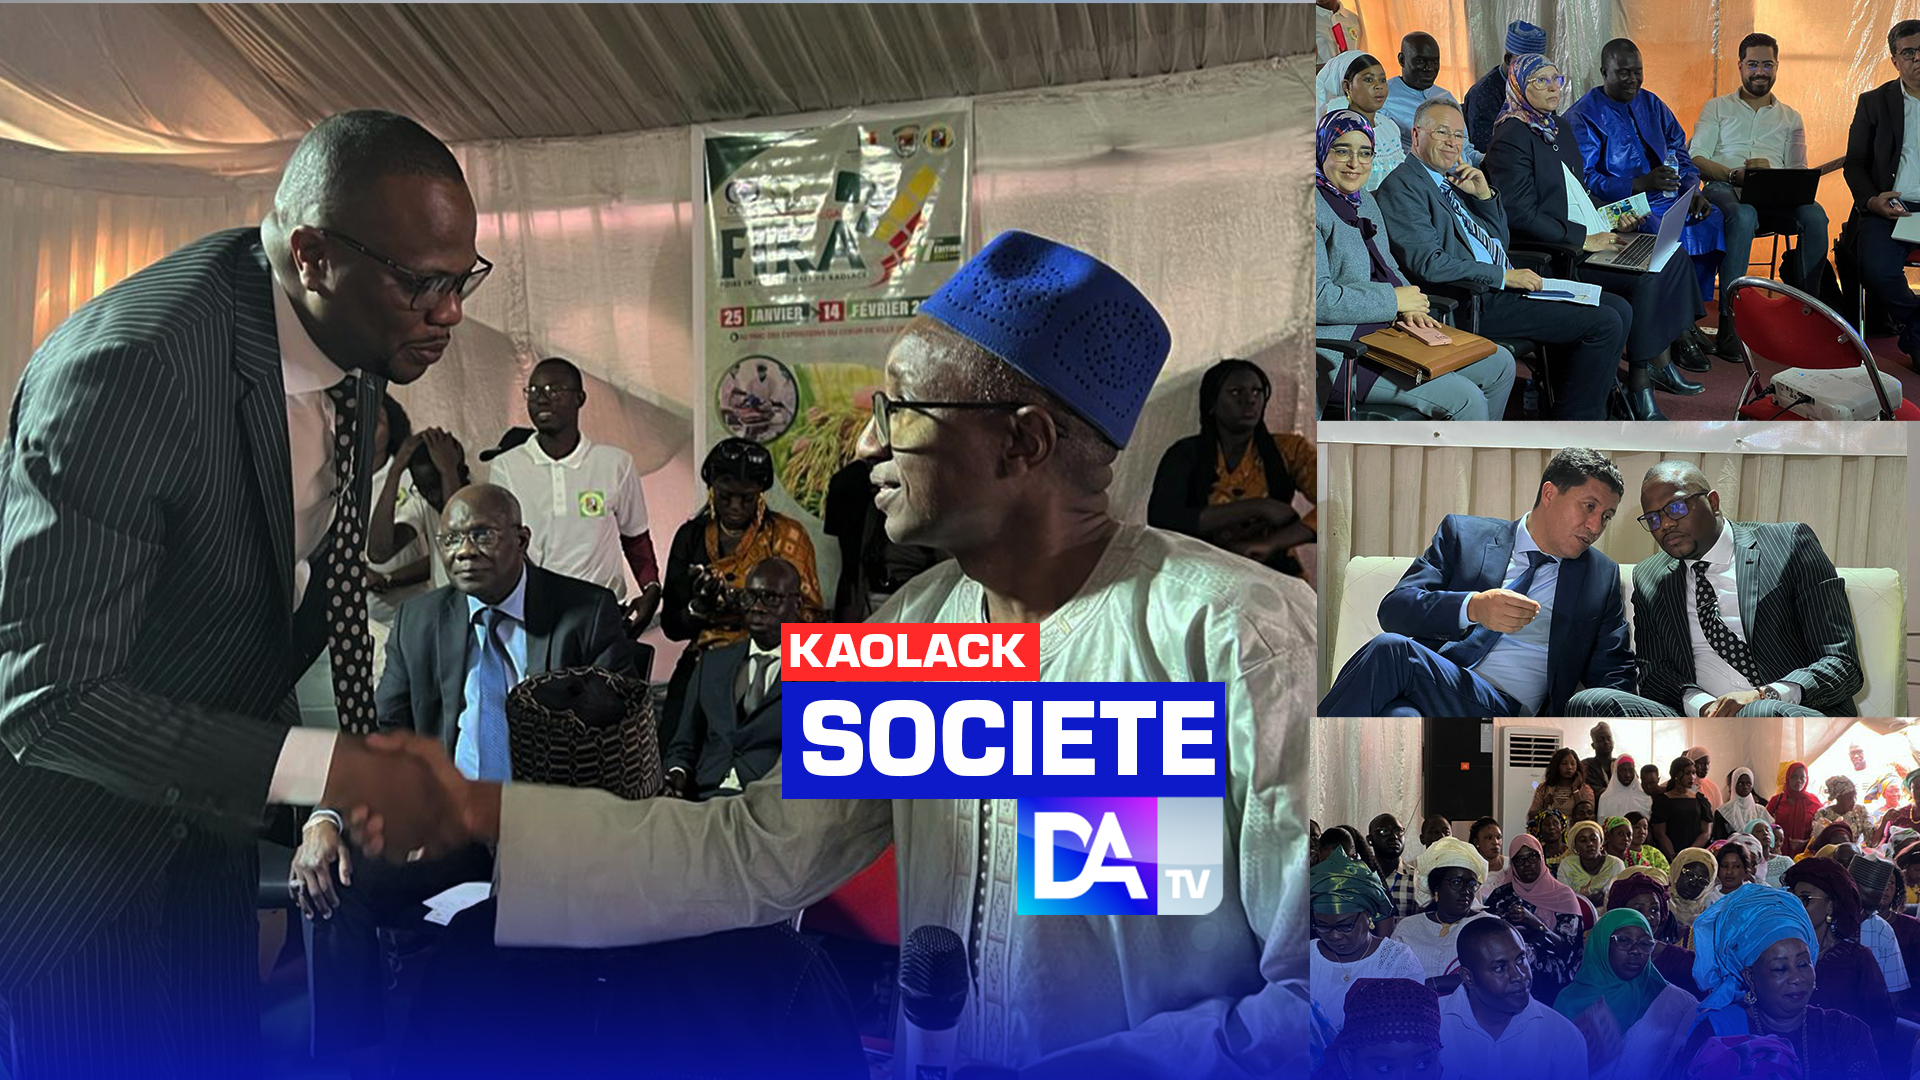 Kaolack - Journée du Conseil départemental / Les mots phares qui jalonnent le discours du président Ahmed Youssouf Bengelloune : "Utilité sociale", "Mutualisation des intelligences" et "Résilience".